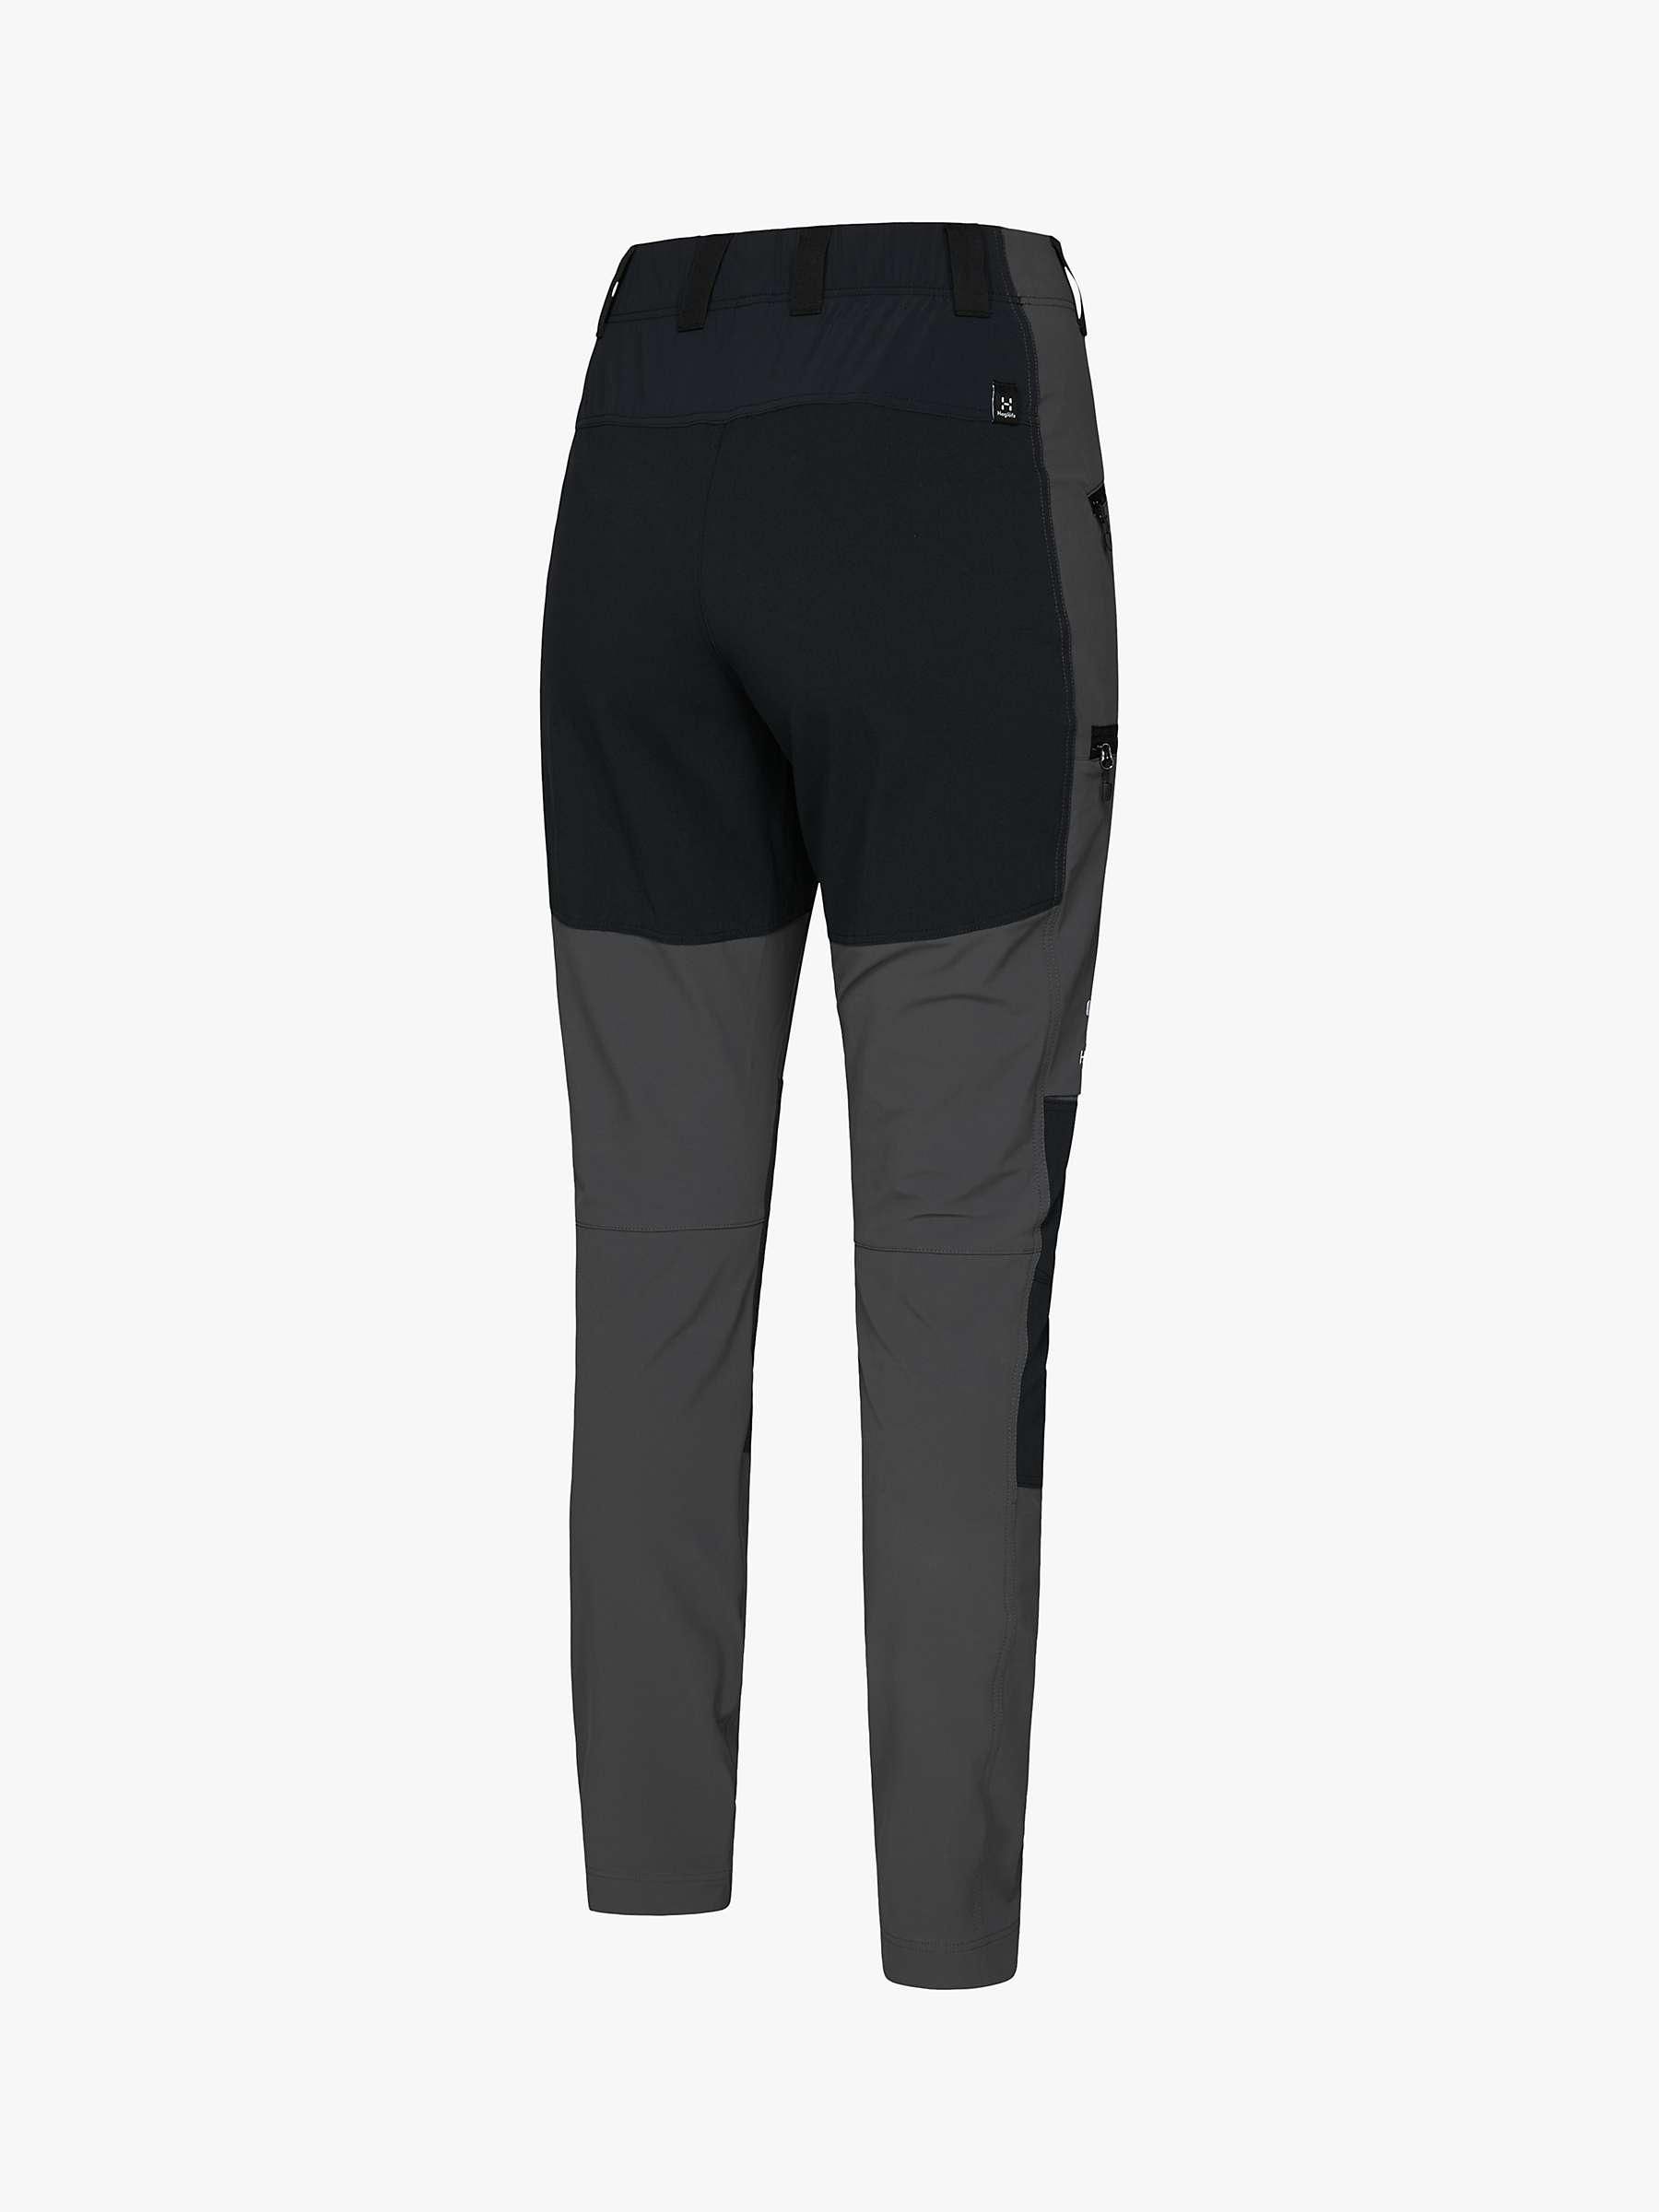 Buy Haglöfs Mid Slim Walking Trousers Online at johnlewis.com